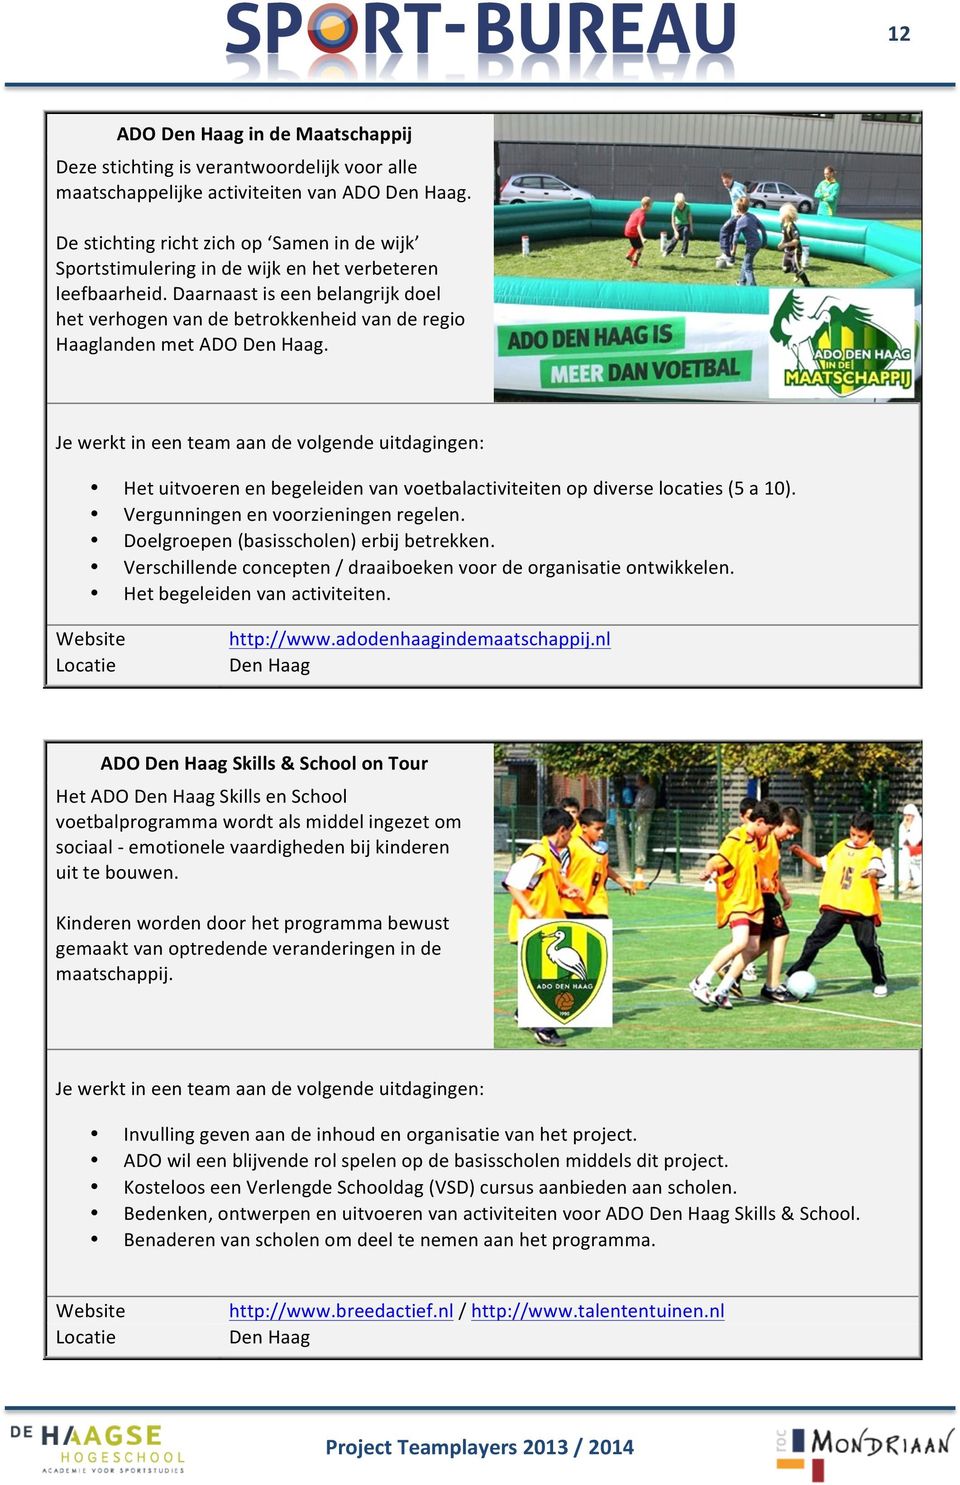 Daarnaast is een belangrijk doel het verhogen van de betrokkenheid van de regio Haaglanden met ADO. Het uitvoeren en begeleiden van voetbalactiviteiten op diverse locaties (5 a 10).